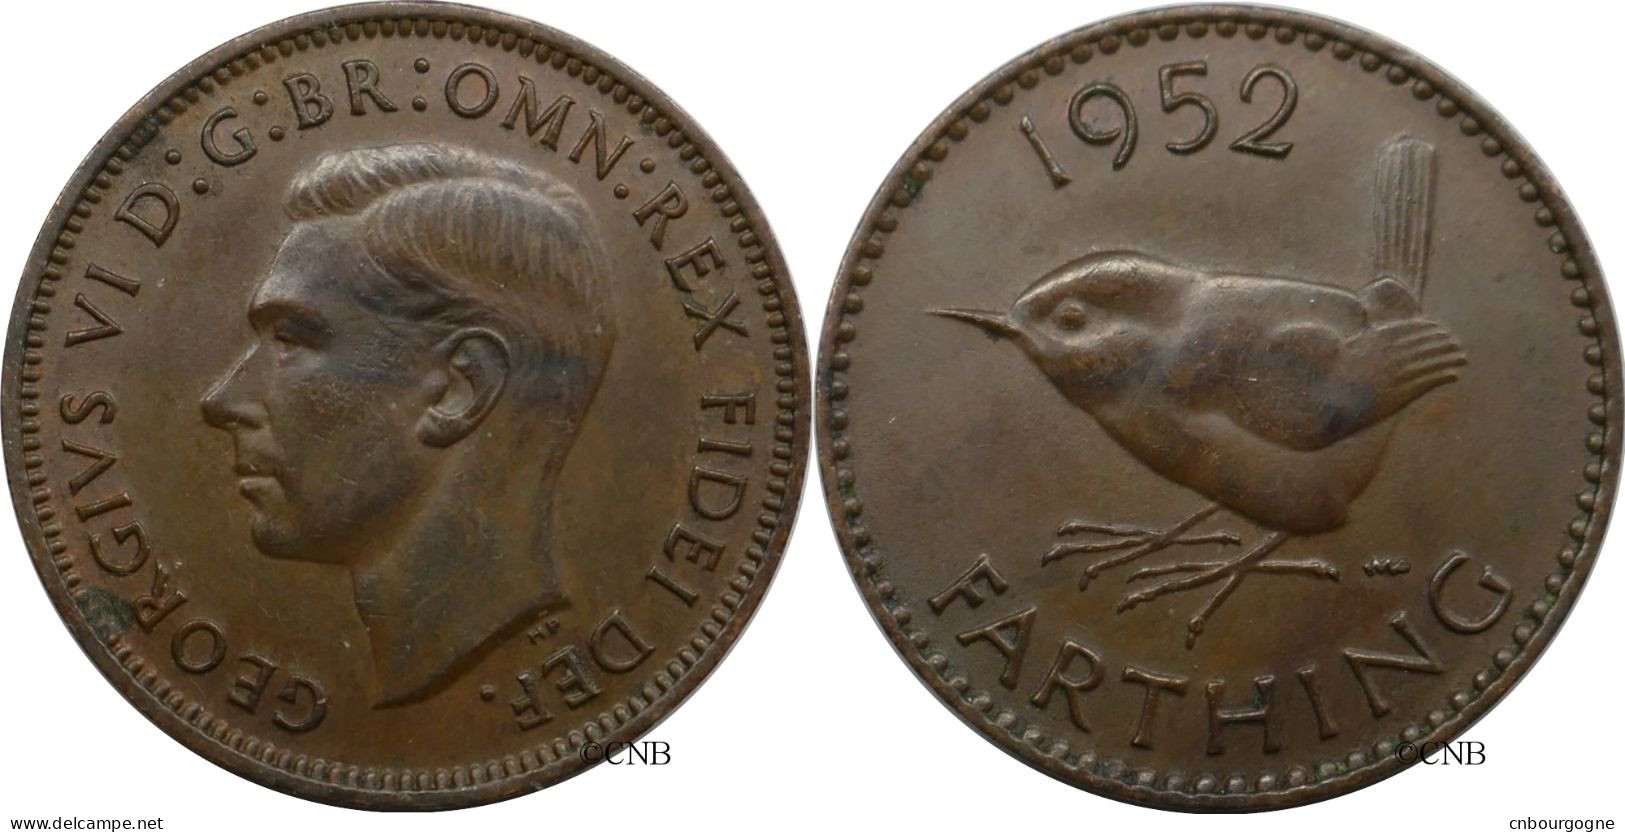 Royaume-Uni - George VI - Farthing 1952 - SUP/AU58 Brown - Mon6673 - B. 1 Farthing